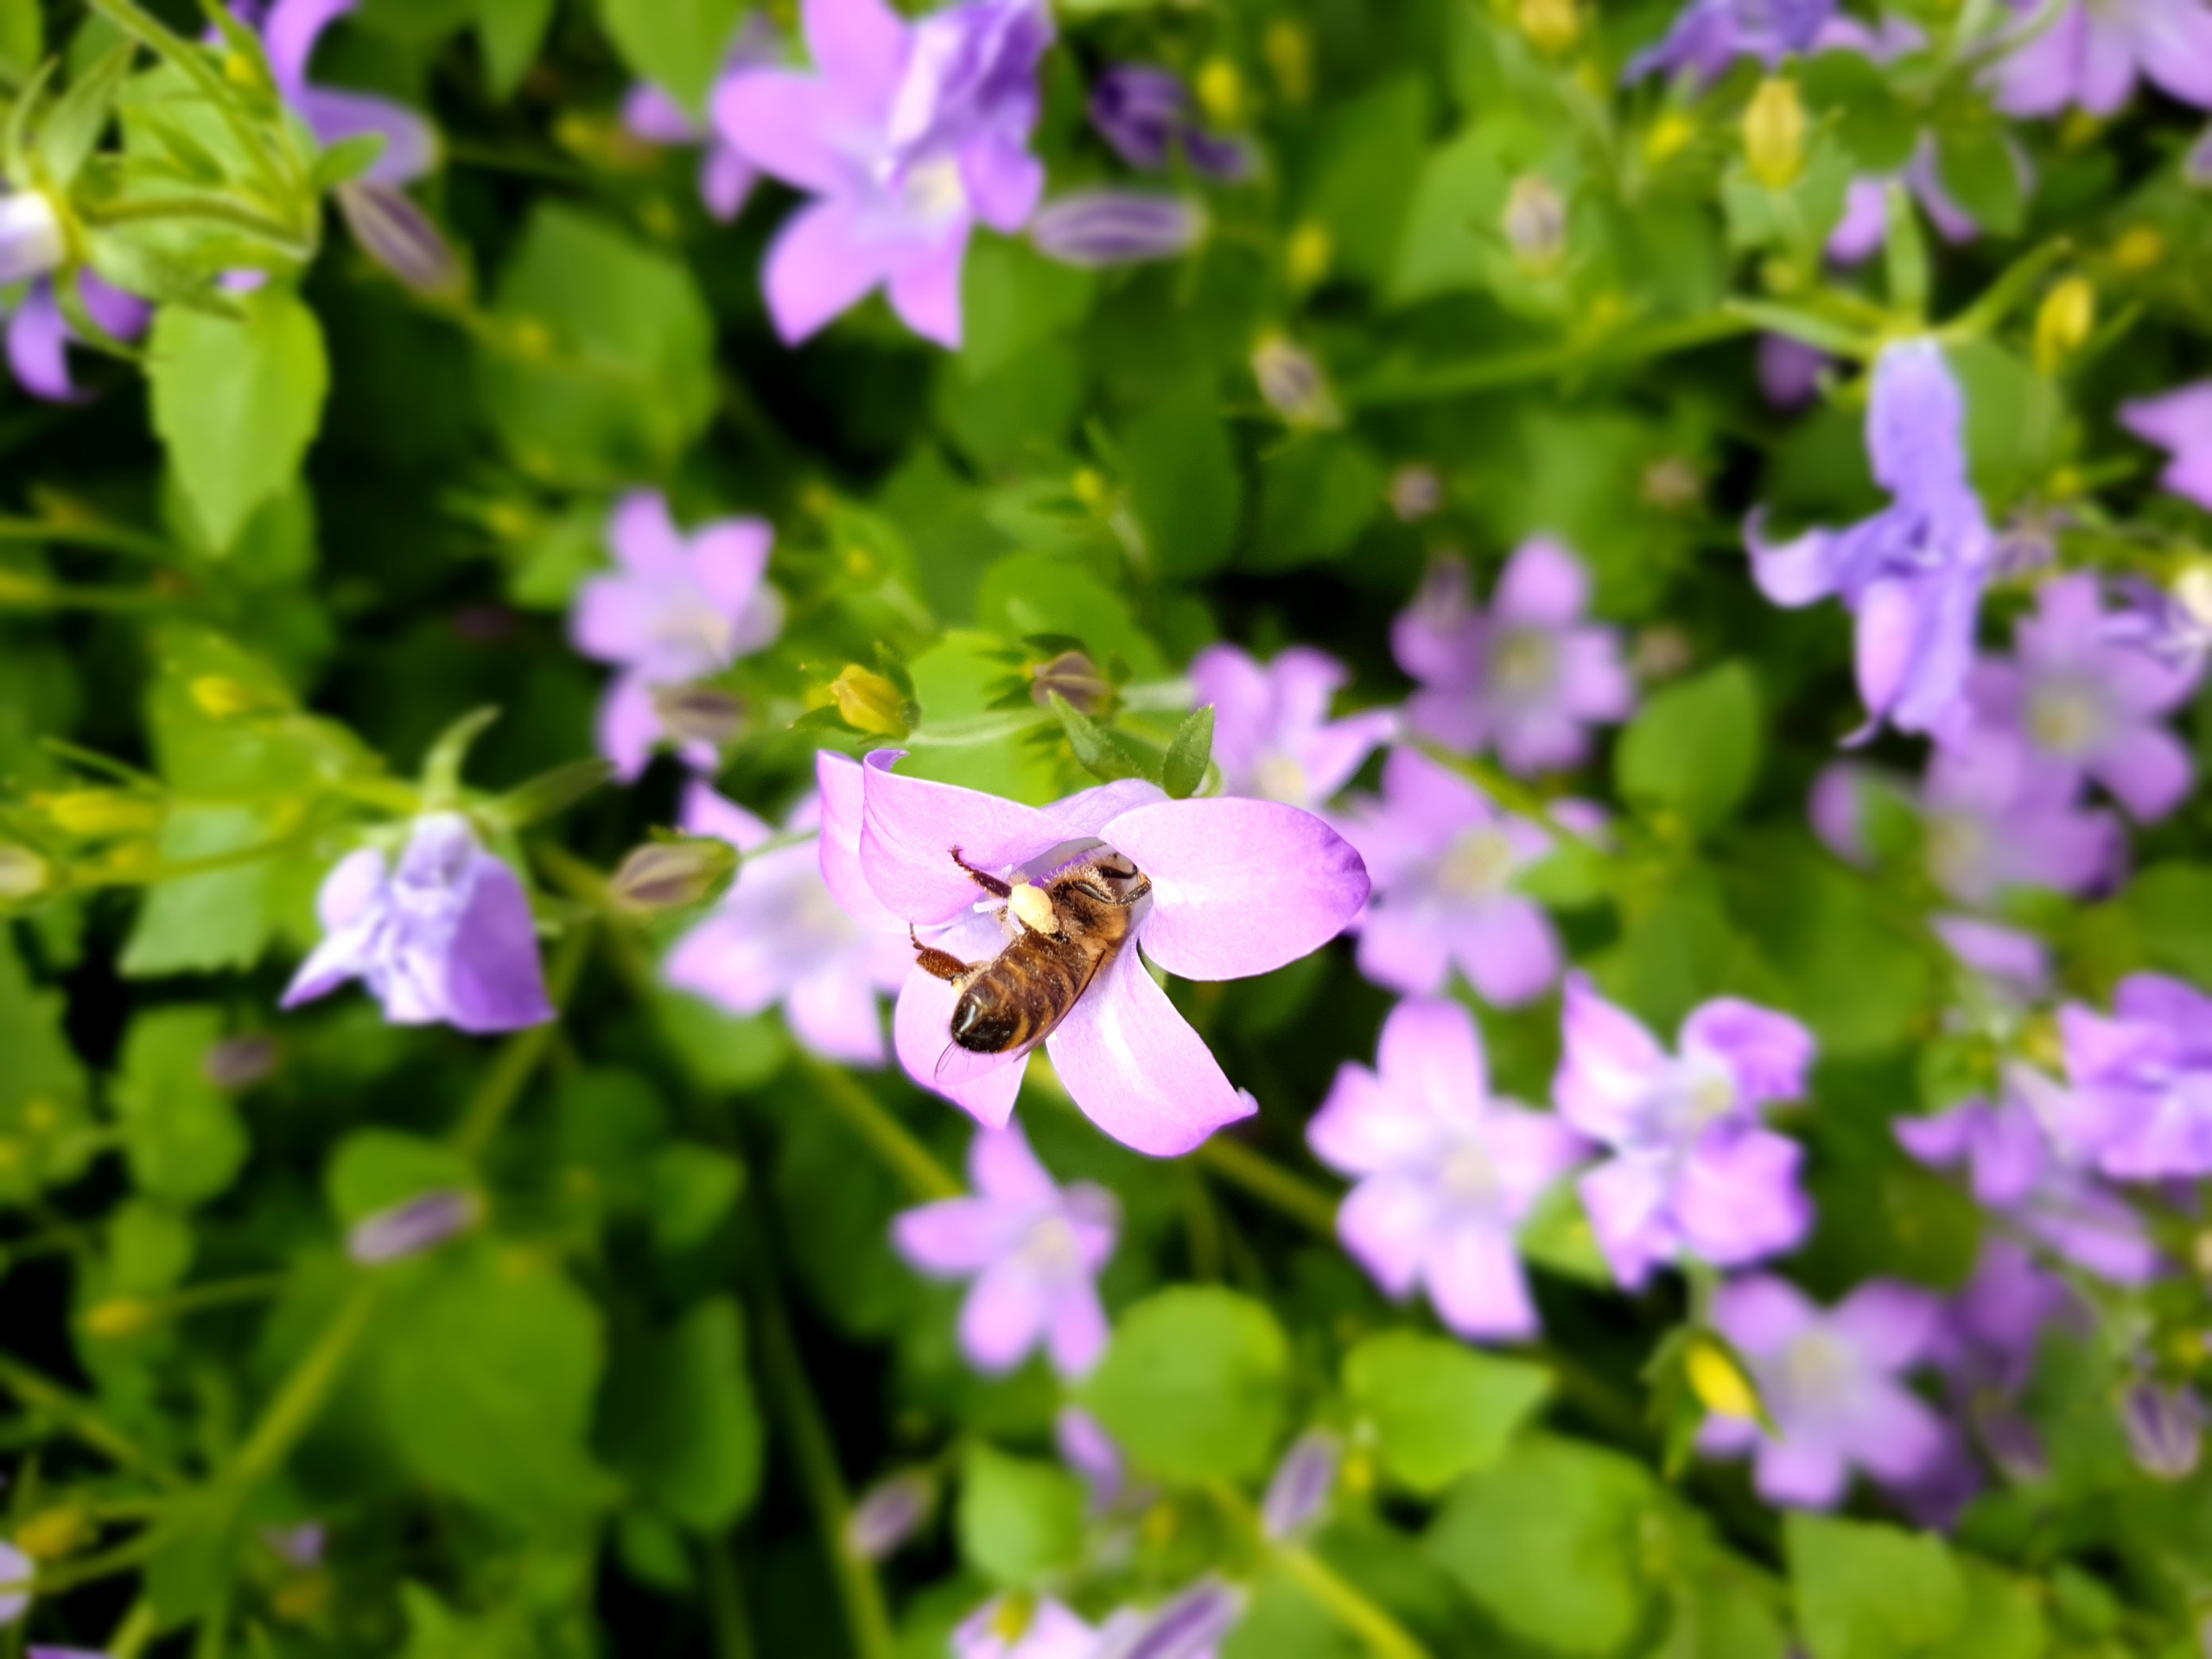 Bild zeigt eine Biene, die kopfüber in eine Blüte klettert, um Blütenstaub beziehungsweise Pollenkörnchen zu sammeln.